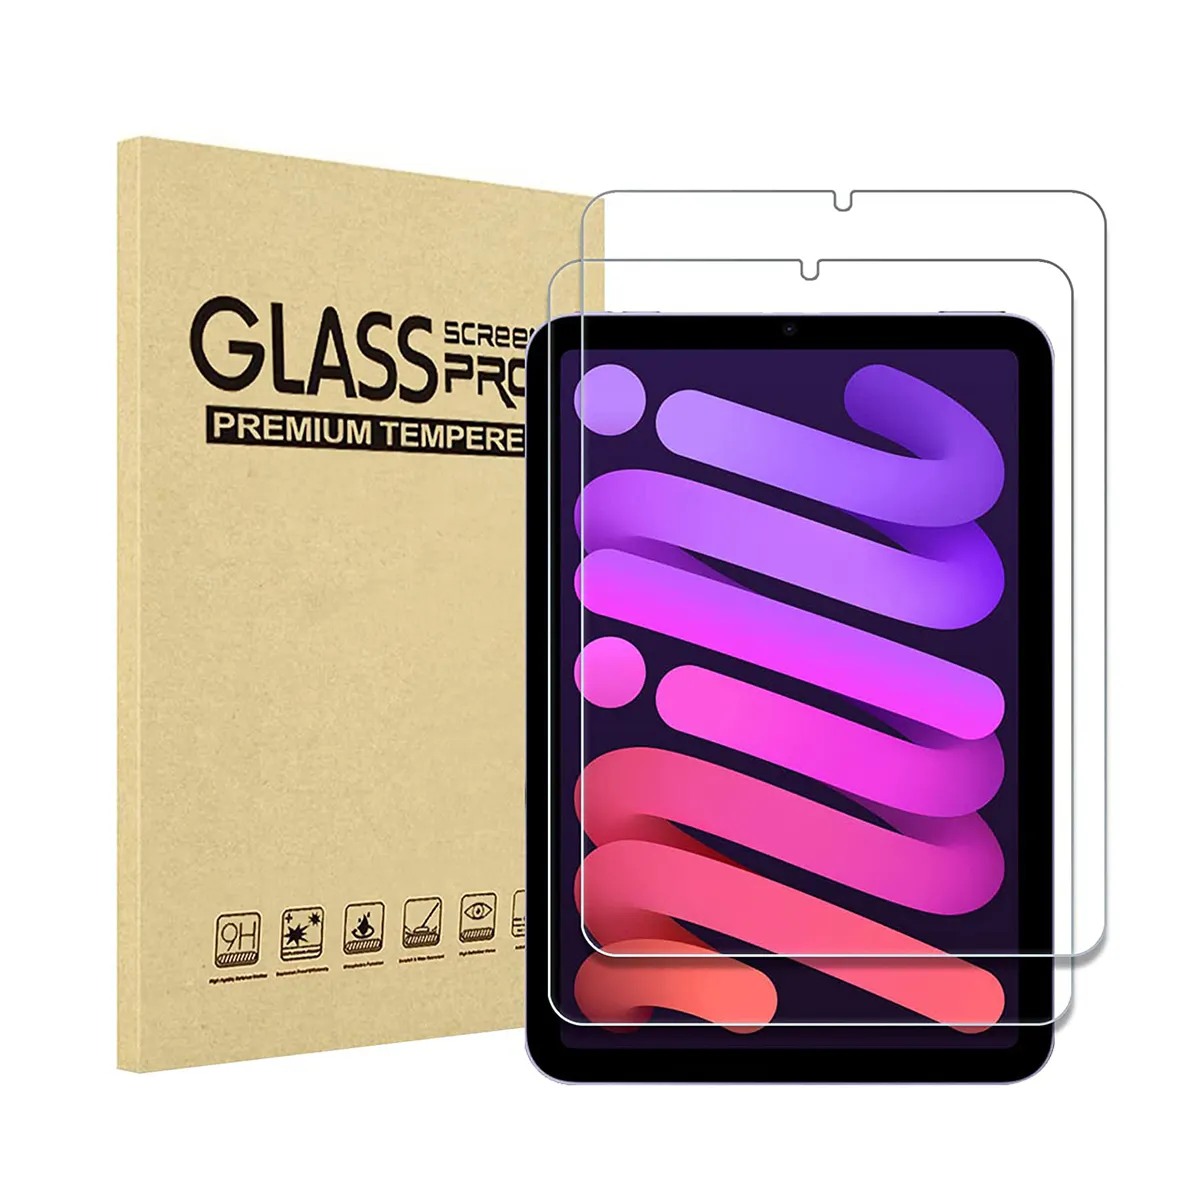 Твердость 9H, HD, прозрачное закаленное стекло премиум класса с защитой от царапин и пузырьков для iPad Mini 6 5 4 3